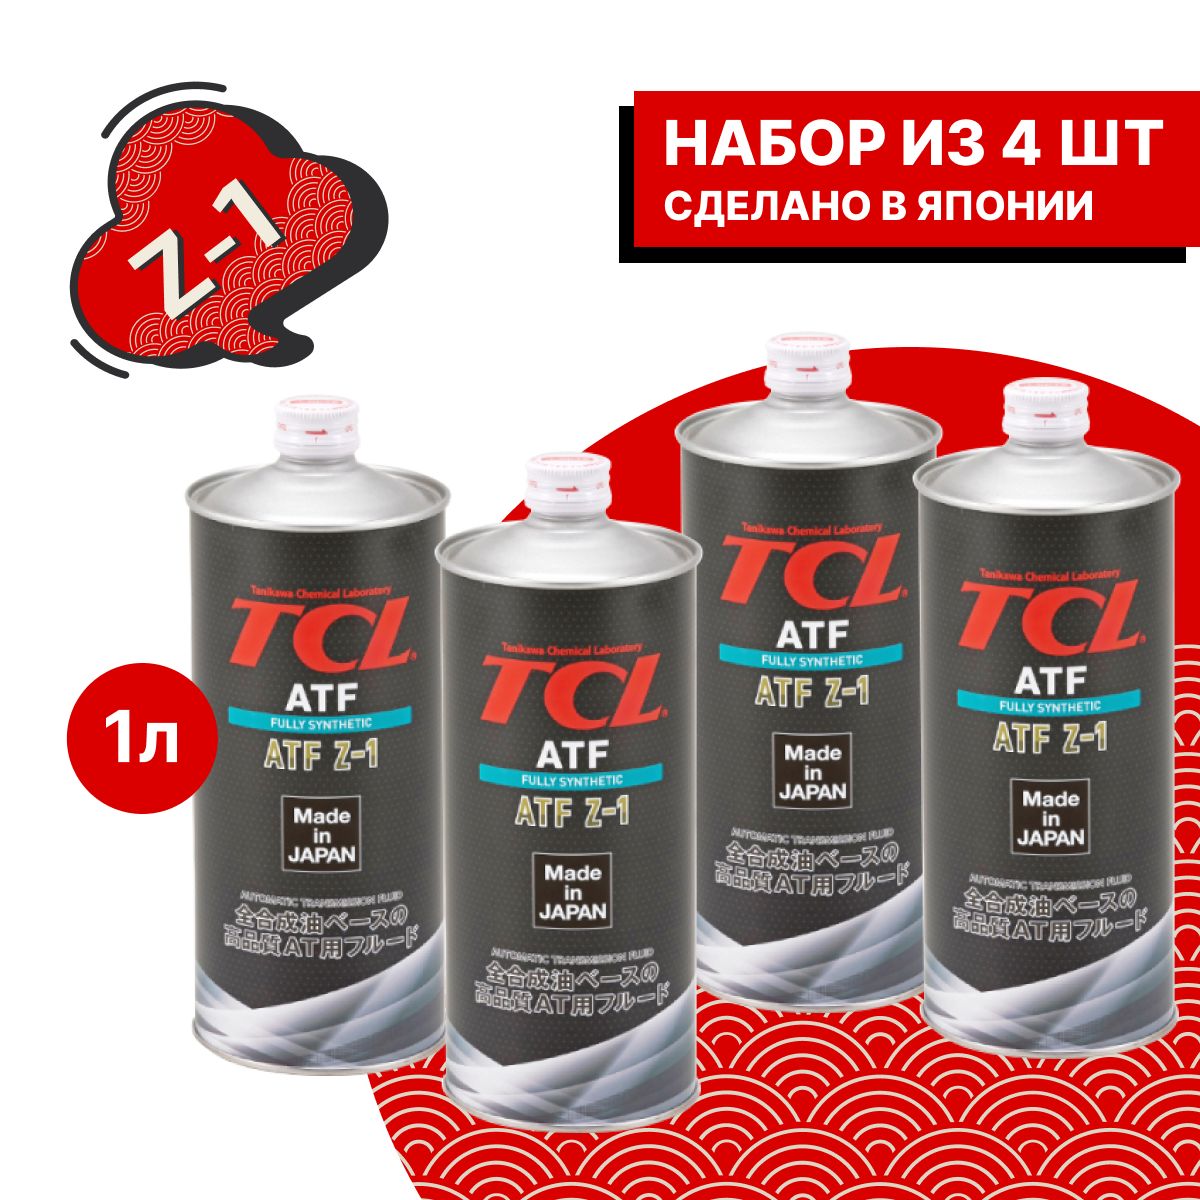 Tcl atf. TCL для АКПП В железной круглой банке.